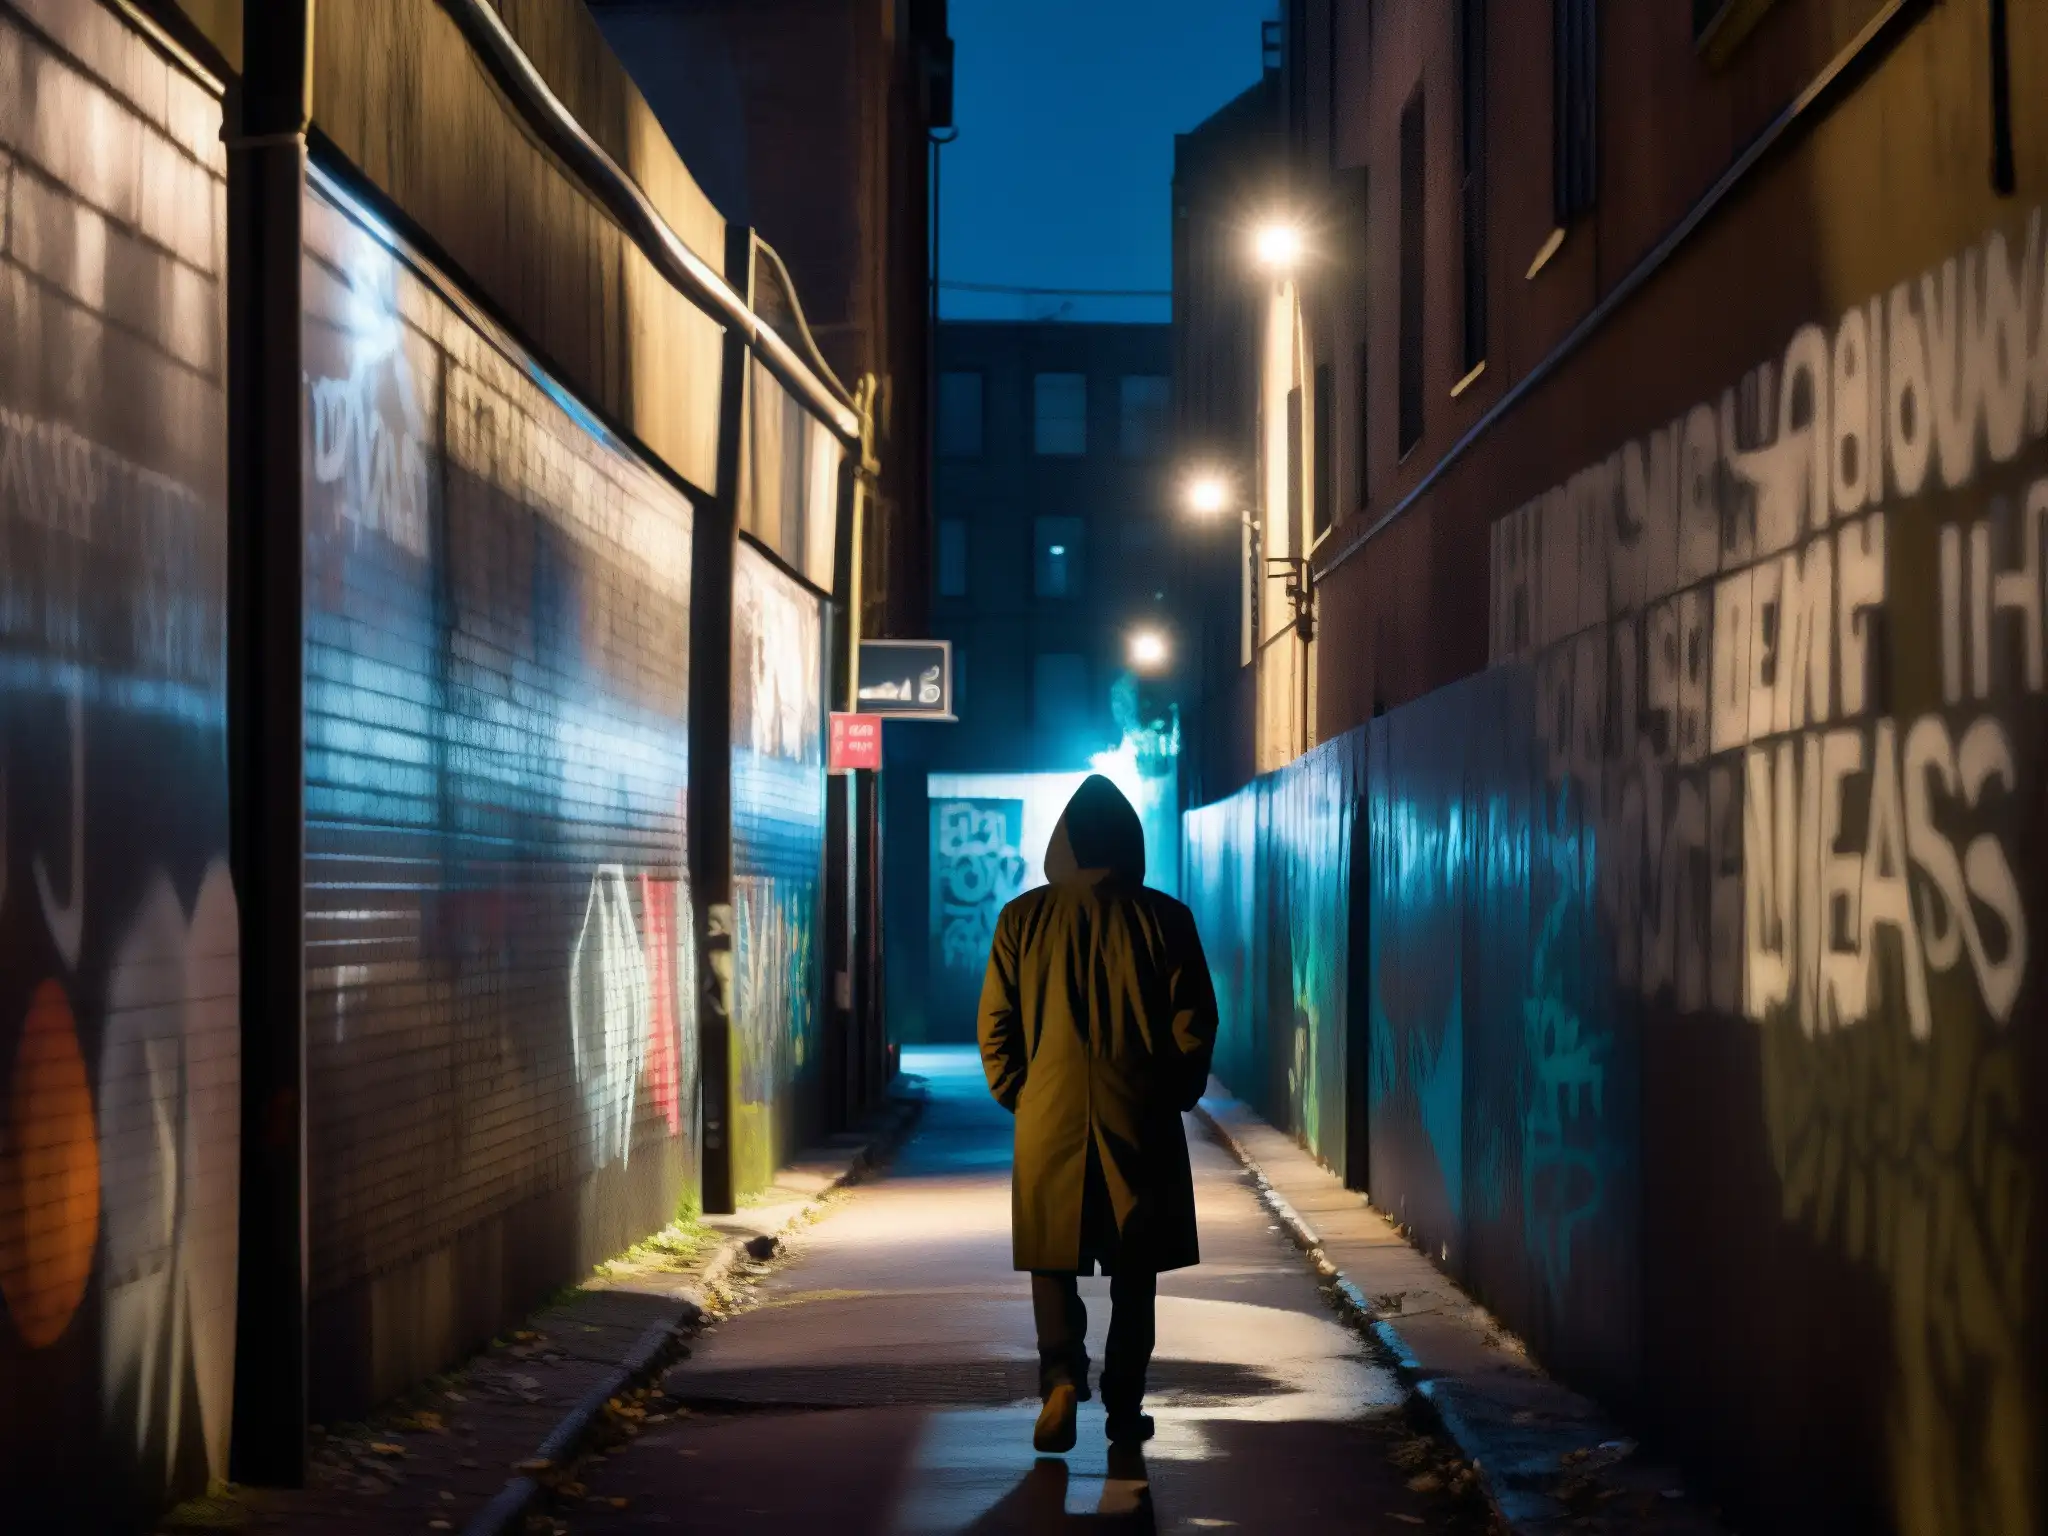 Una imagen documental de alta resolución muestra un callejón urbano con grafitis y luces parpadeantes